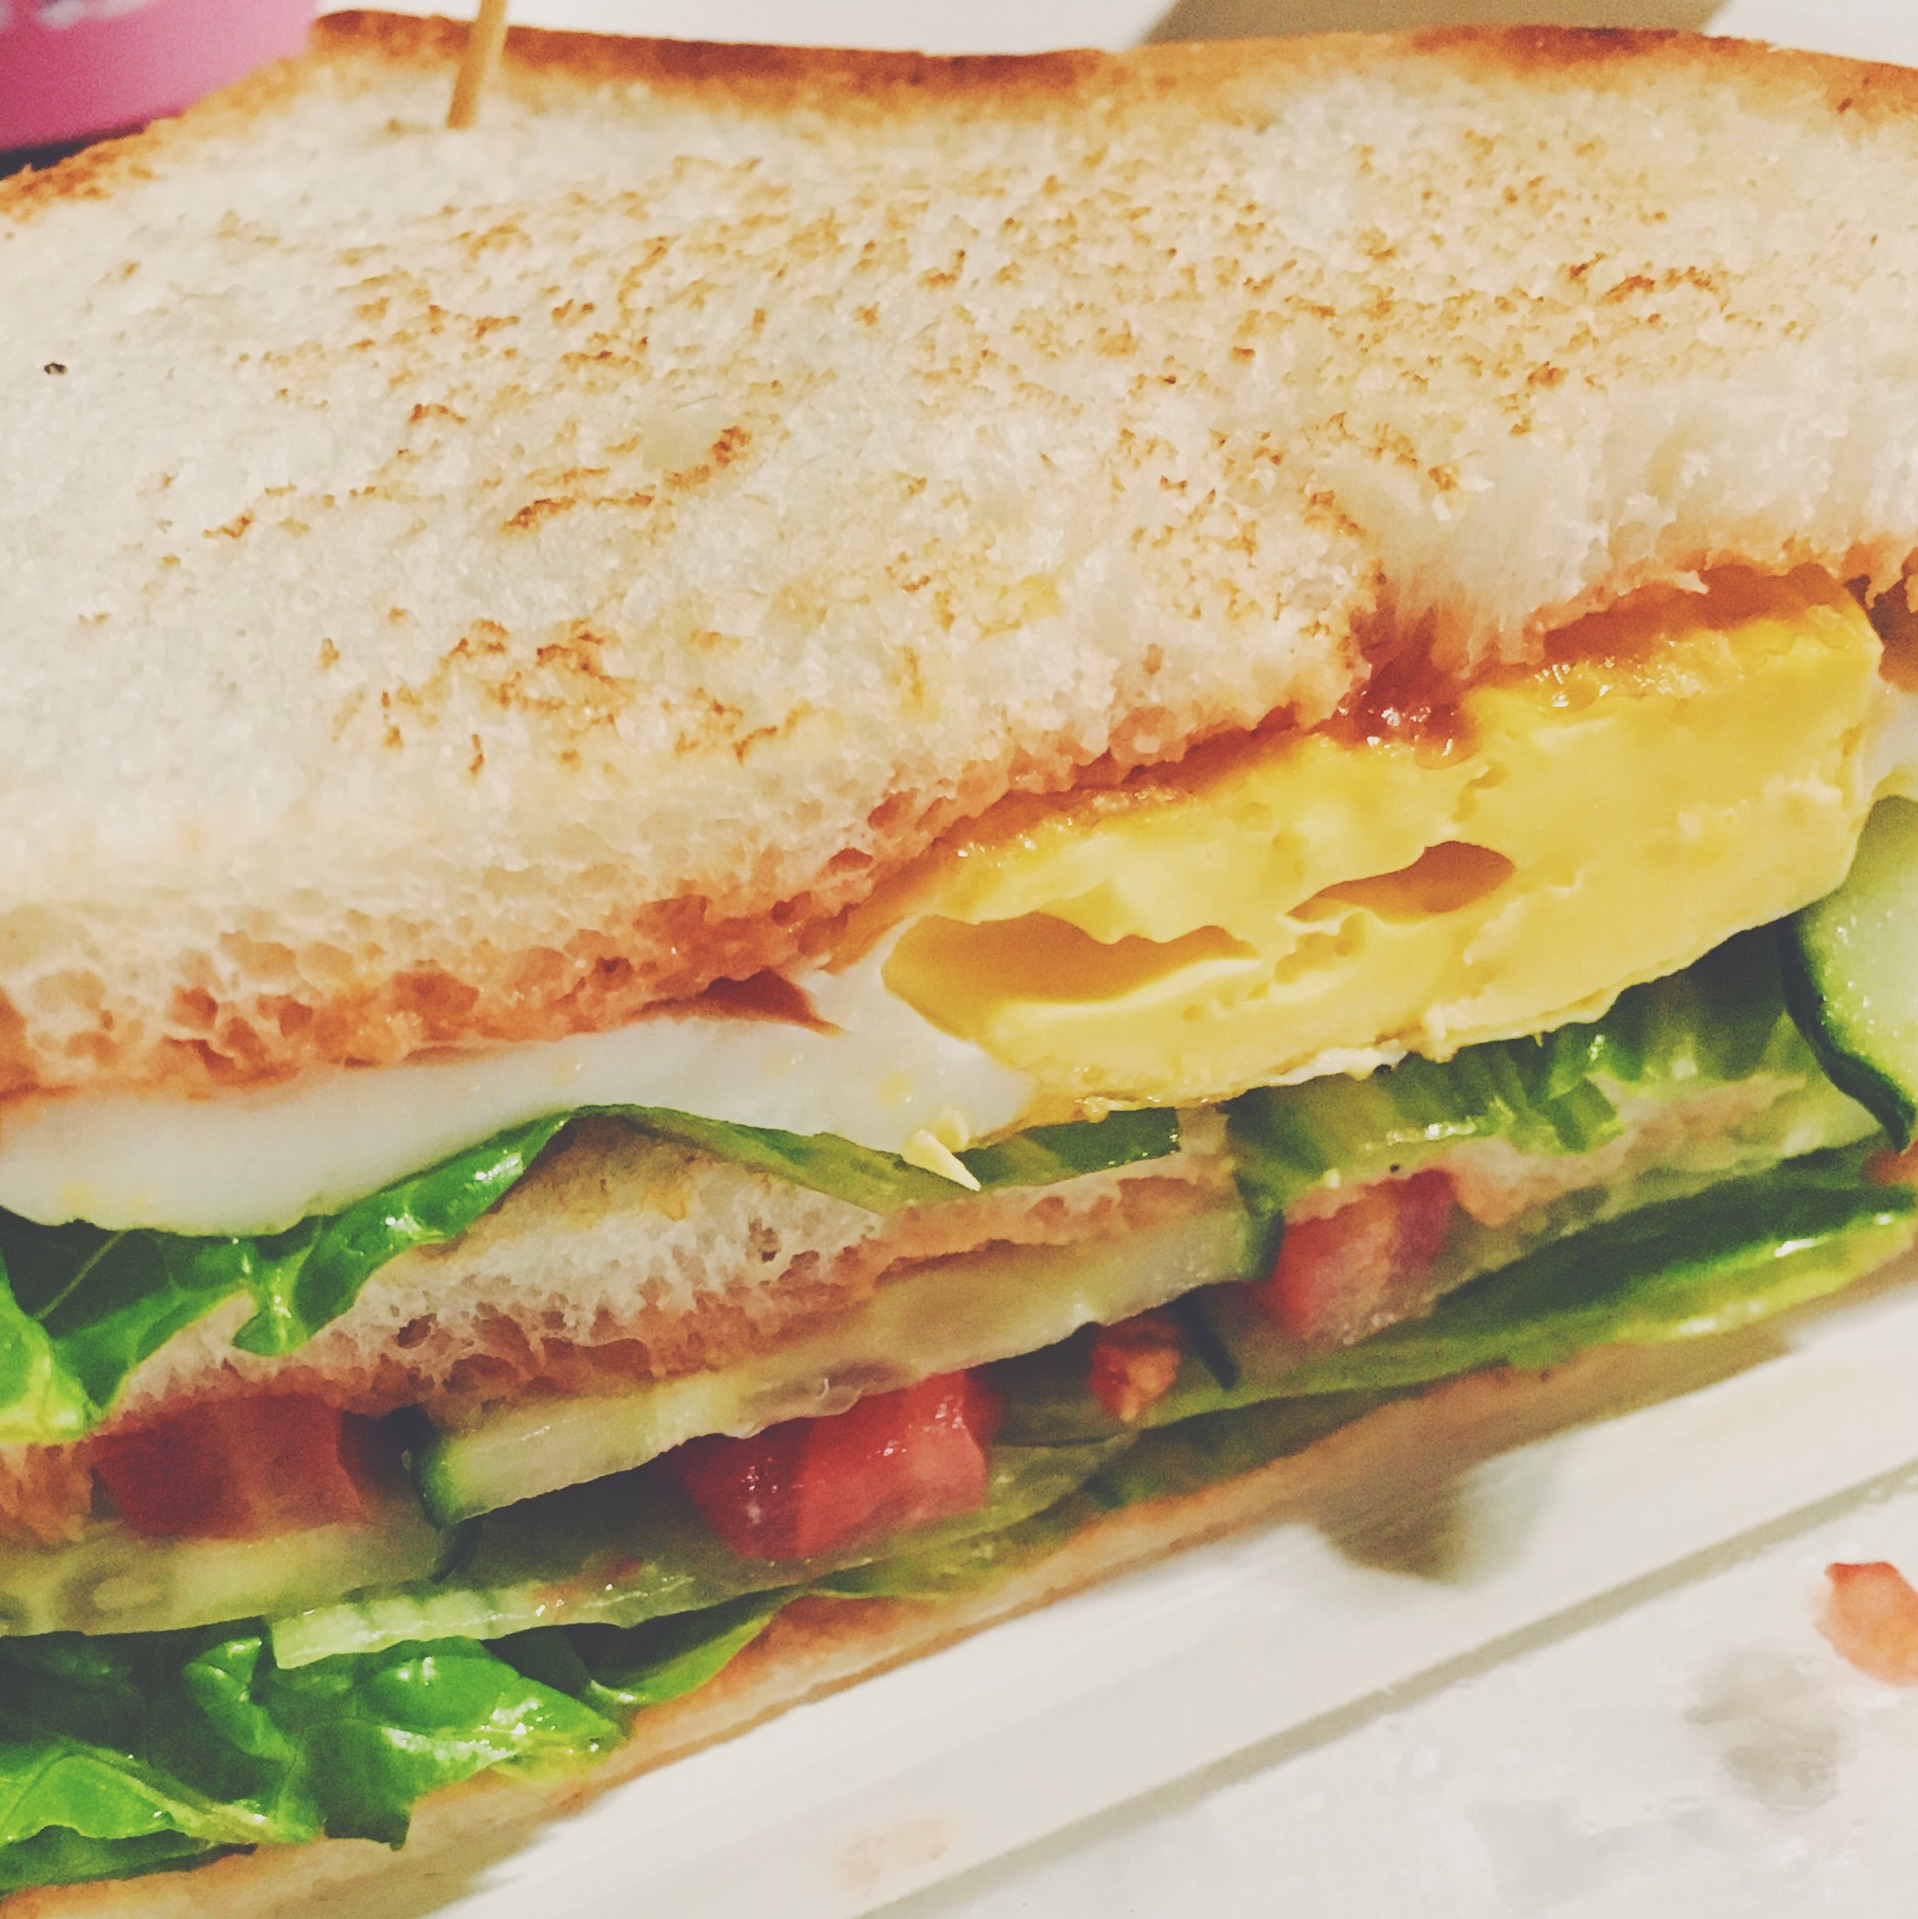 三明治的简单做法步骤 - 早旭经验网